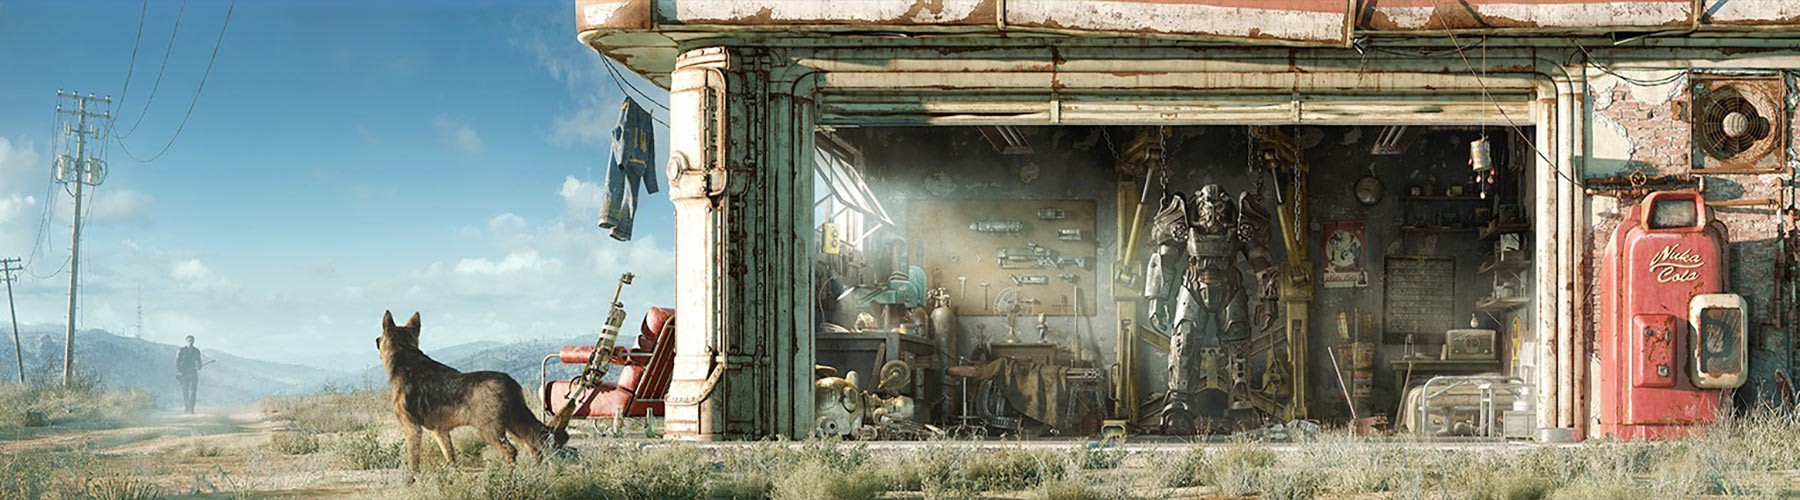 Fallout 4 мастер на все руки фото 69